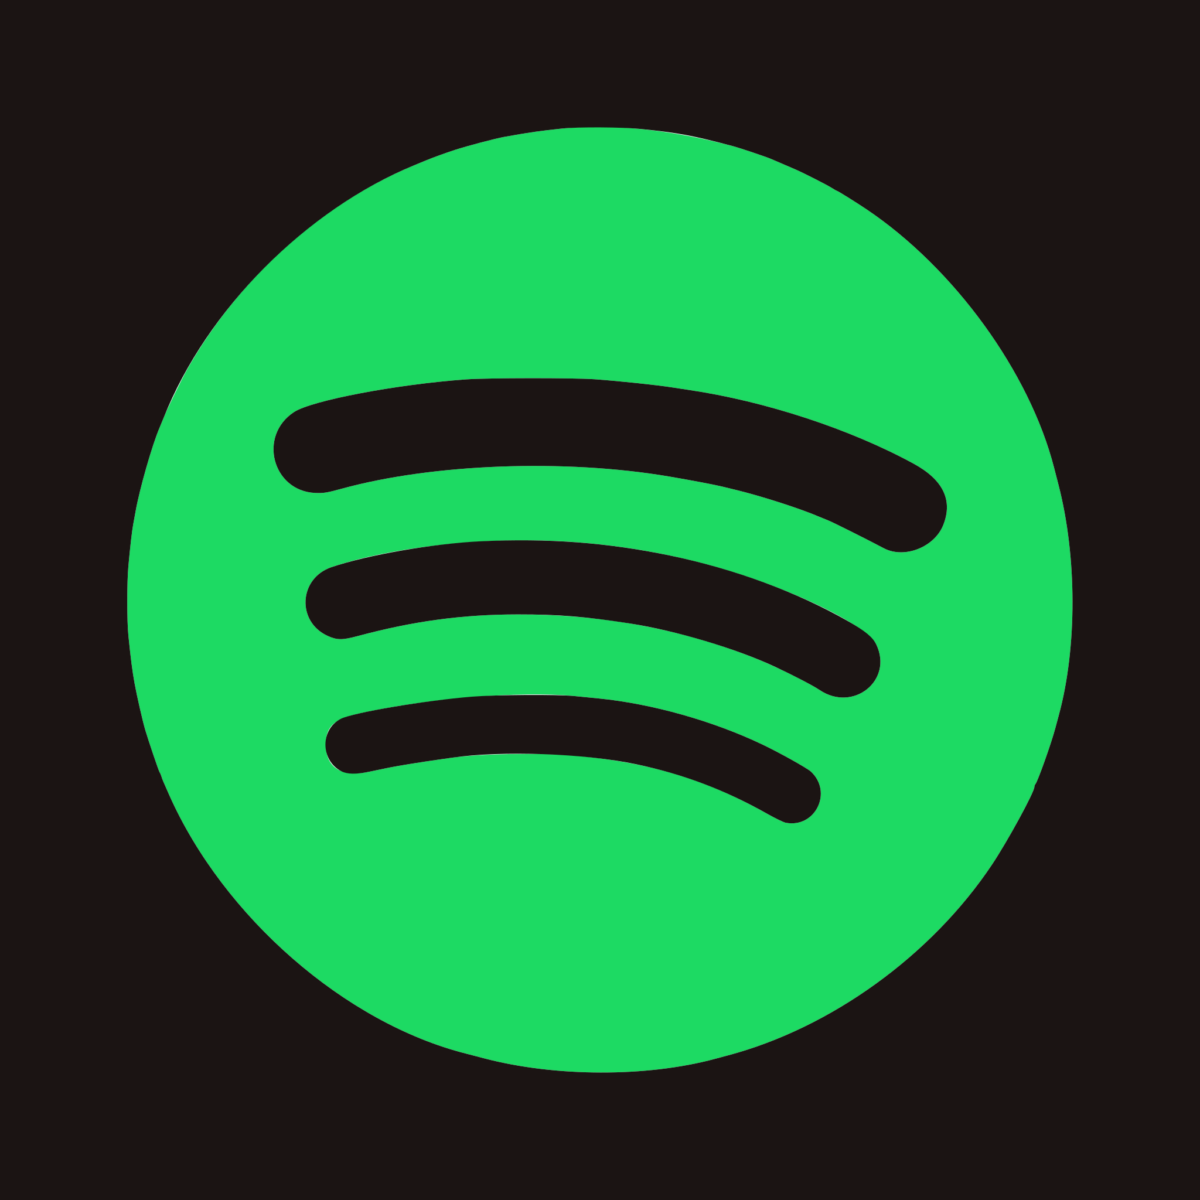 Listen on Spotify